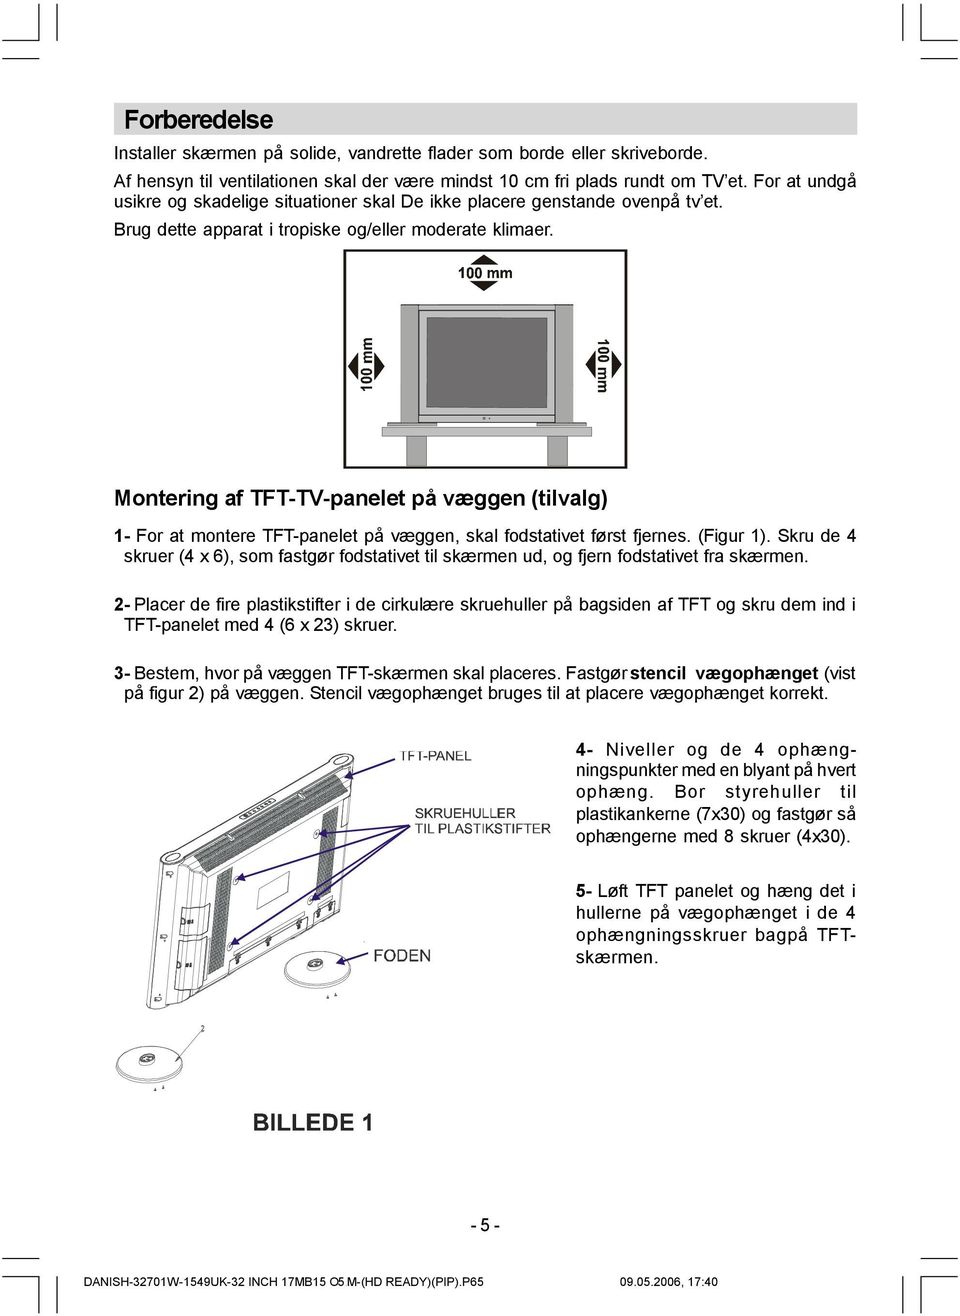 Montering af TFT-TV-panelet på væggen (tilvalg) 1- For at montere TFT-panelet på væggen, skal fodstativet først fjernes. (Figur 1).